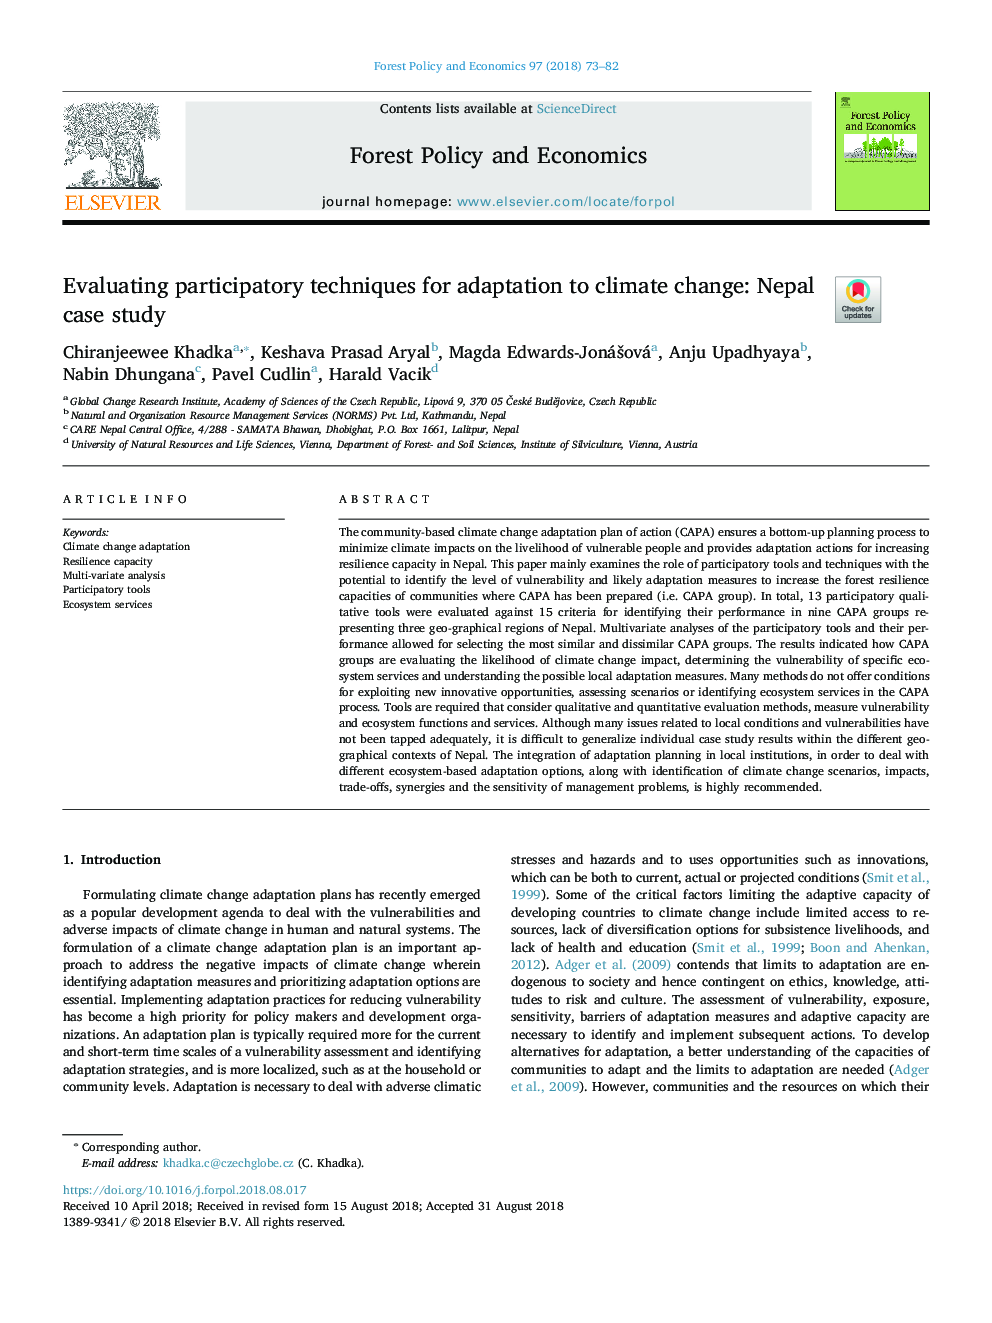 ارزیابی تکنیک های مشارکتی برای انطباق با تغییرات آب و هوایی: مطالعه موردی نپال